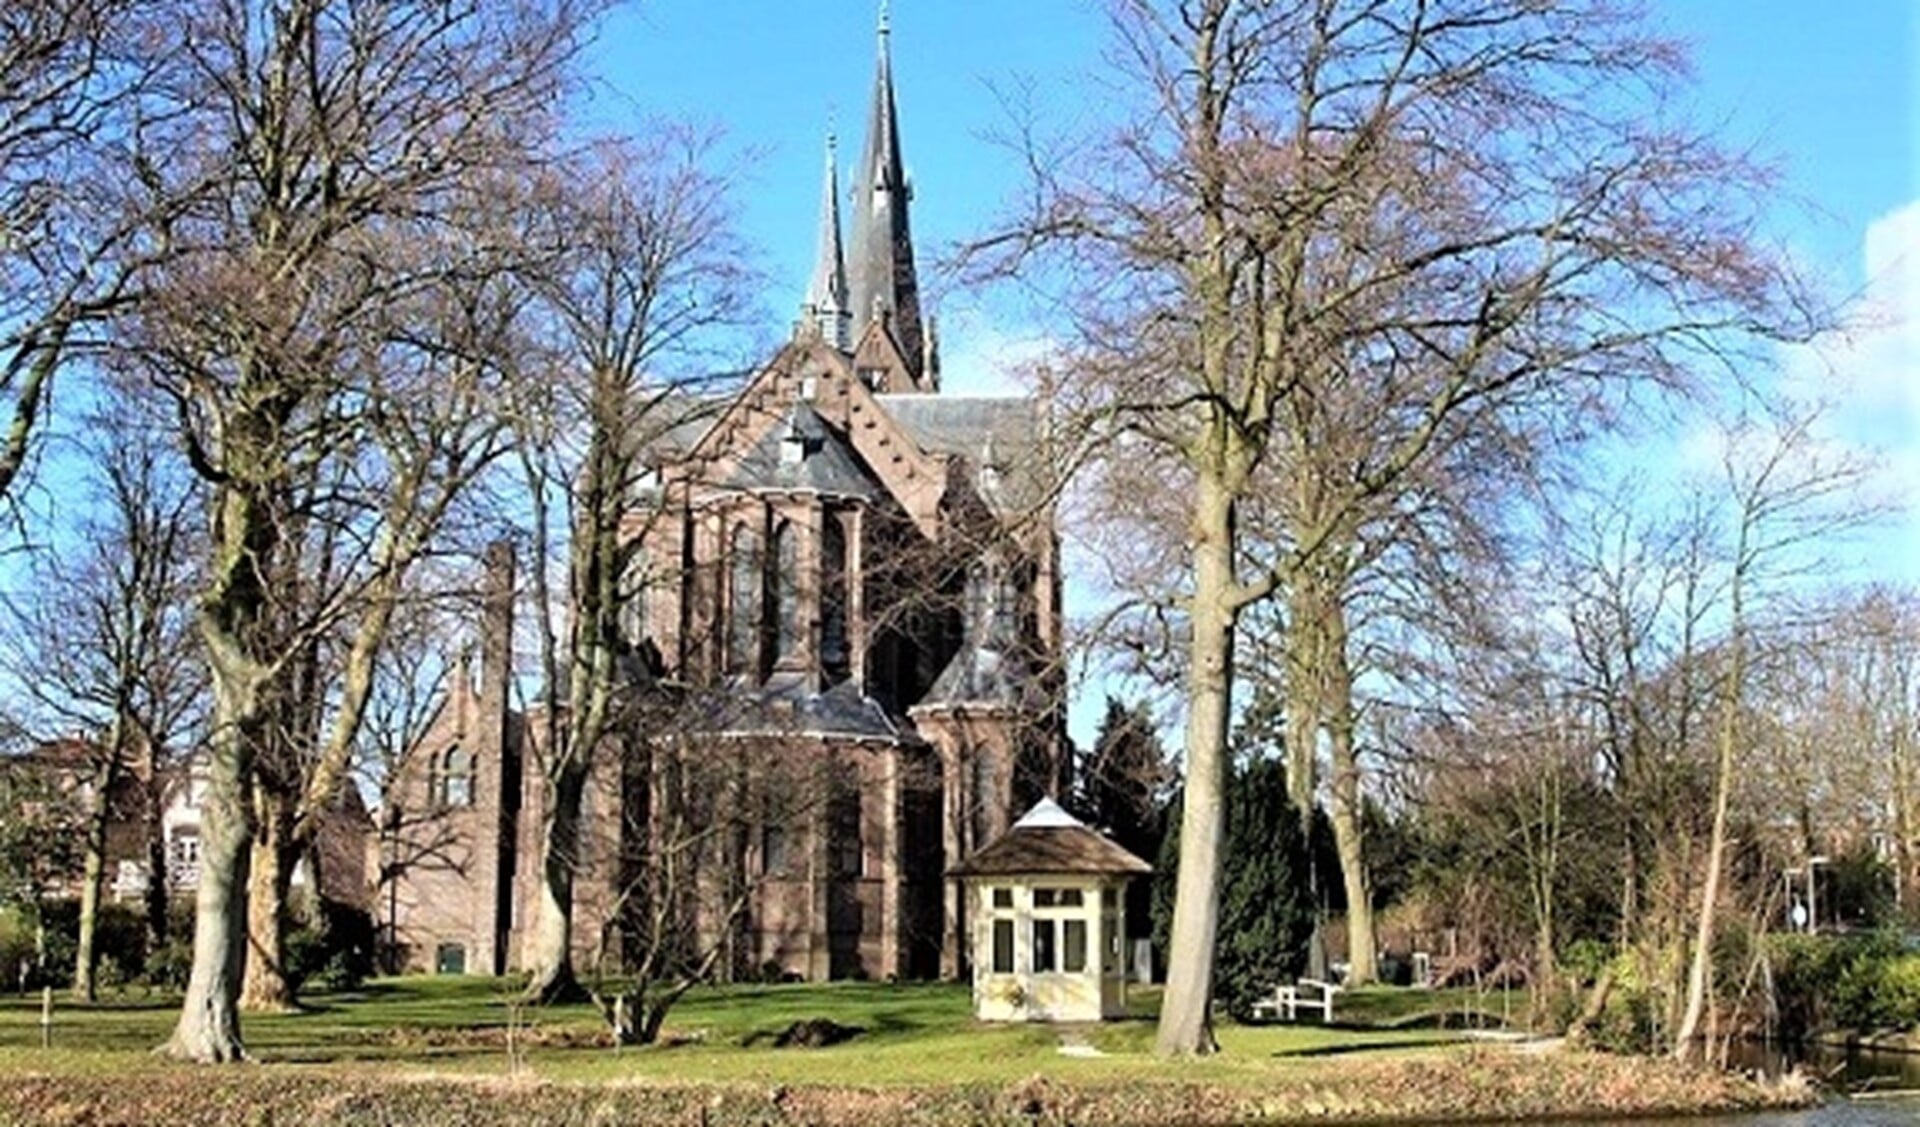 De St. Martinuskerk aan het Oosteinde in Voorburg, gezien vanaf de Westvlietweg (foto: W. van Rooijen).